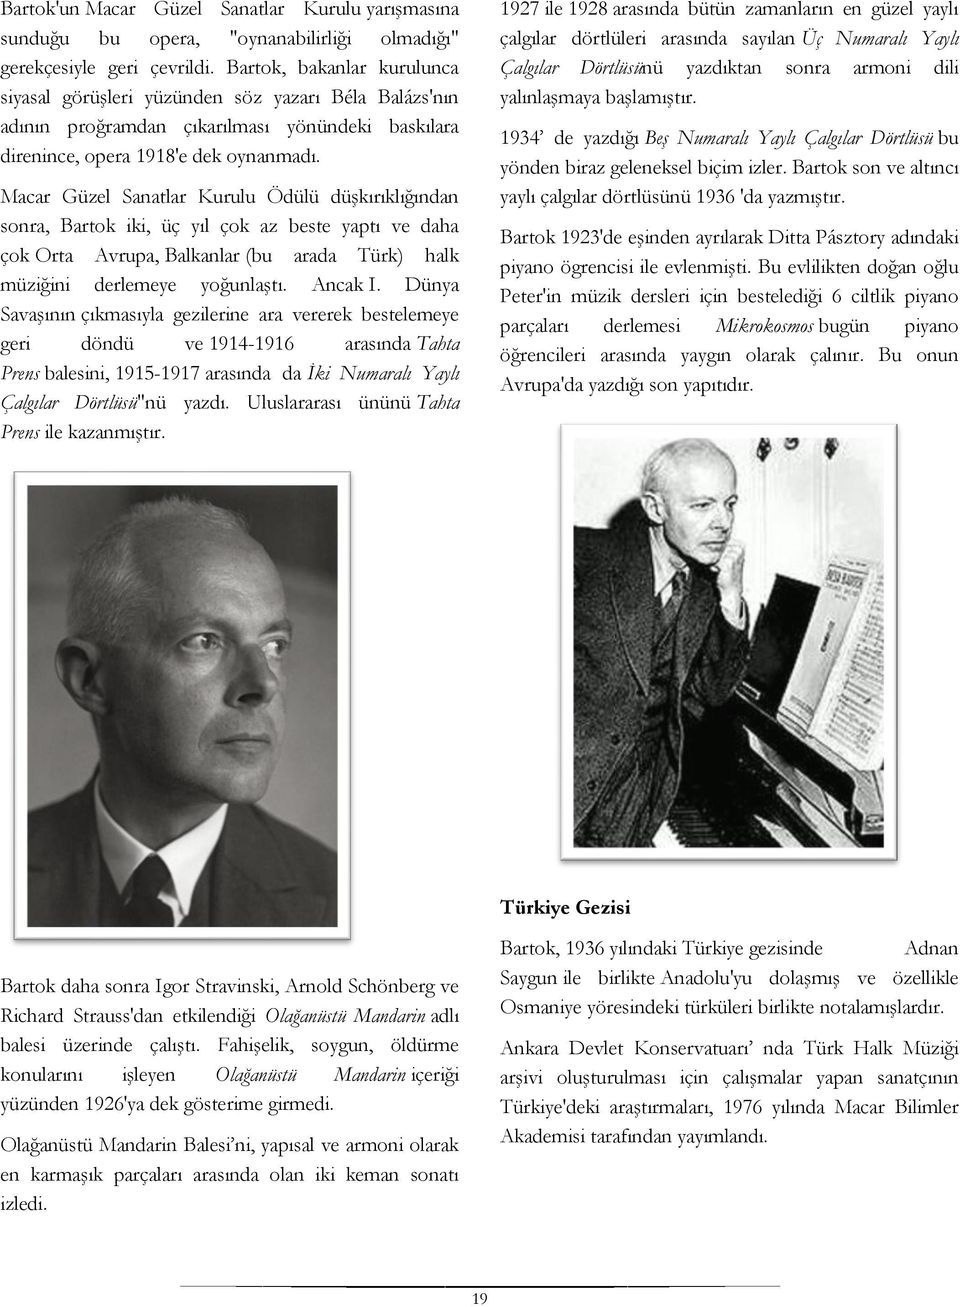 Macar Güzel Sanatlar Kurulu Ödülü düşkırıklığından sonra, Bartok iki, üç yıl çok az beste yaptı ve daha çok Orta Avrupa, Balkanlar (bu arada Türk) halk müziğini derlemeye yoğunlaştı. Ancak I.